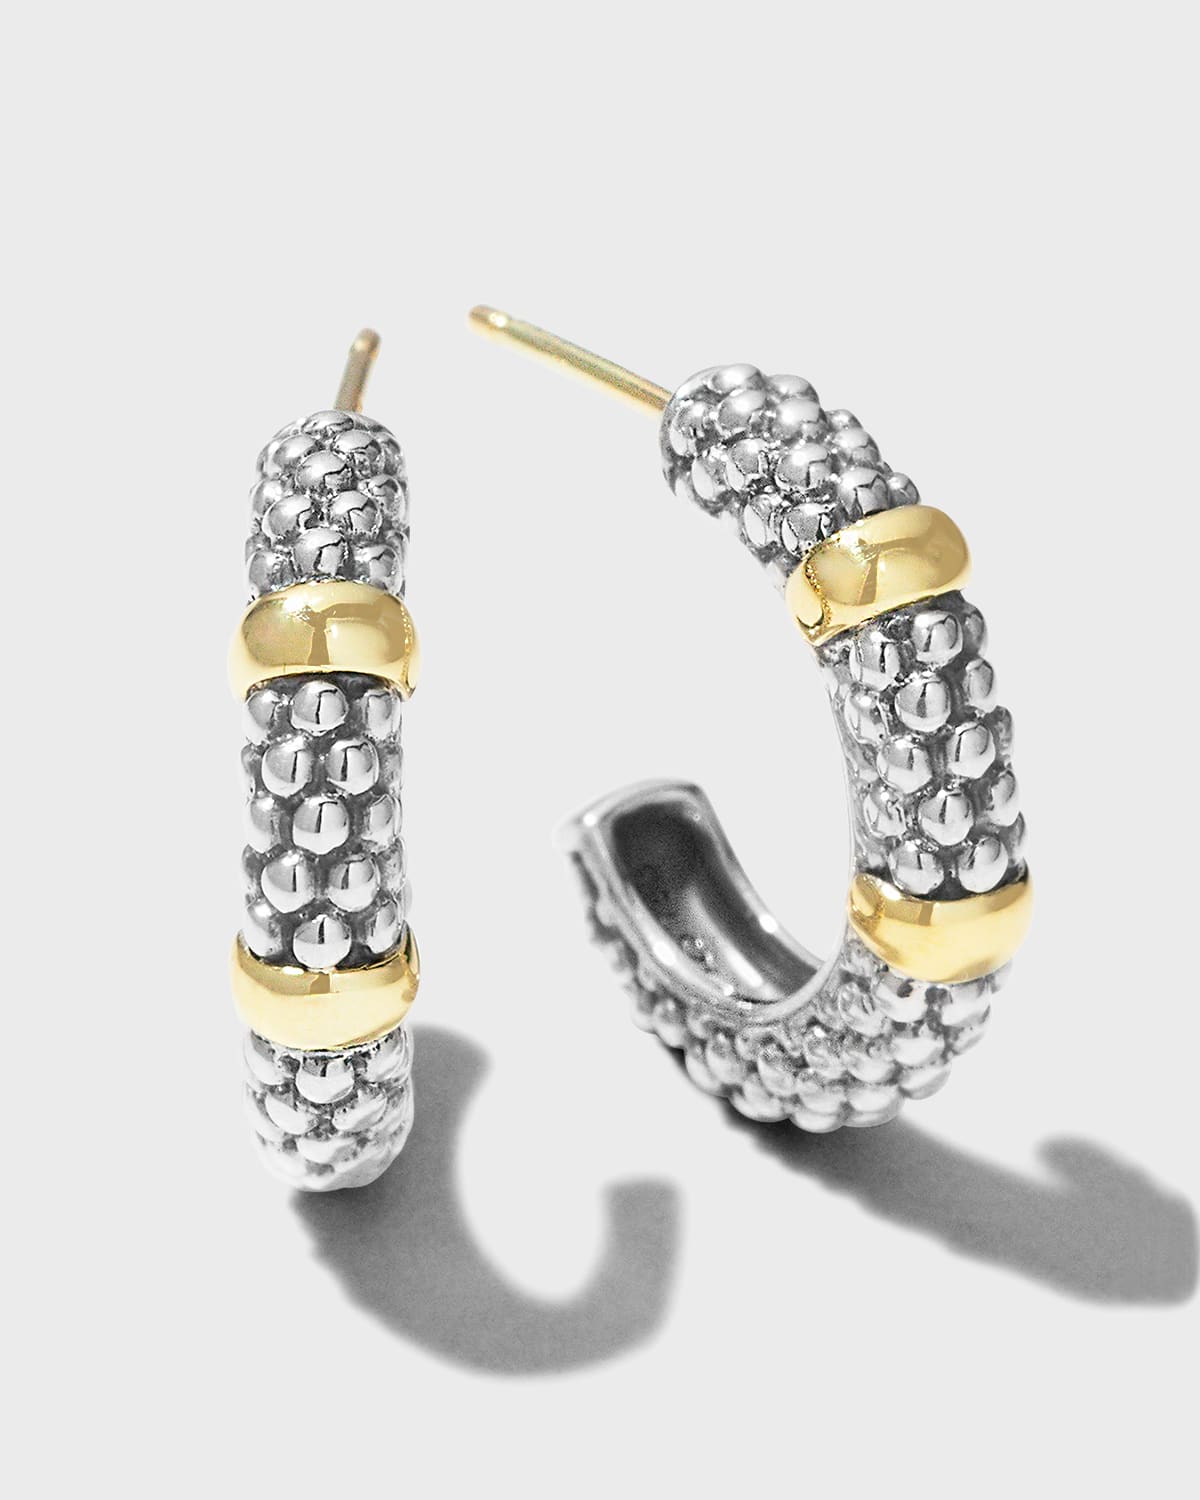 Silver & 18k Gold Caviar Hoop Earrings, 19mm